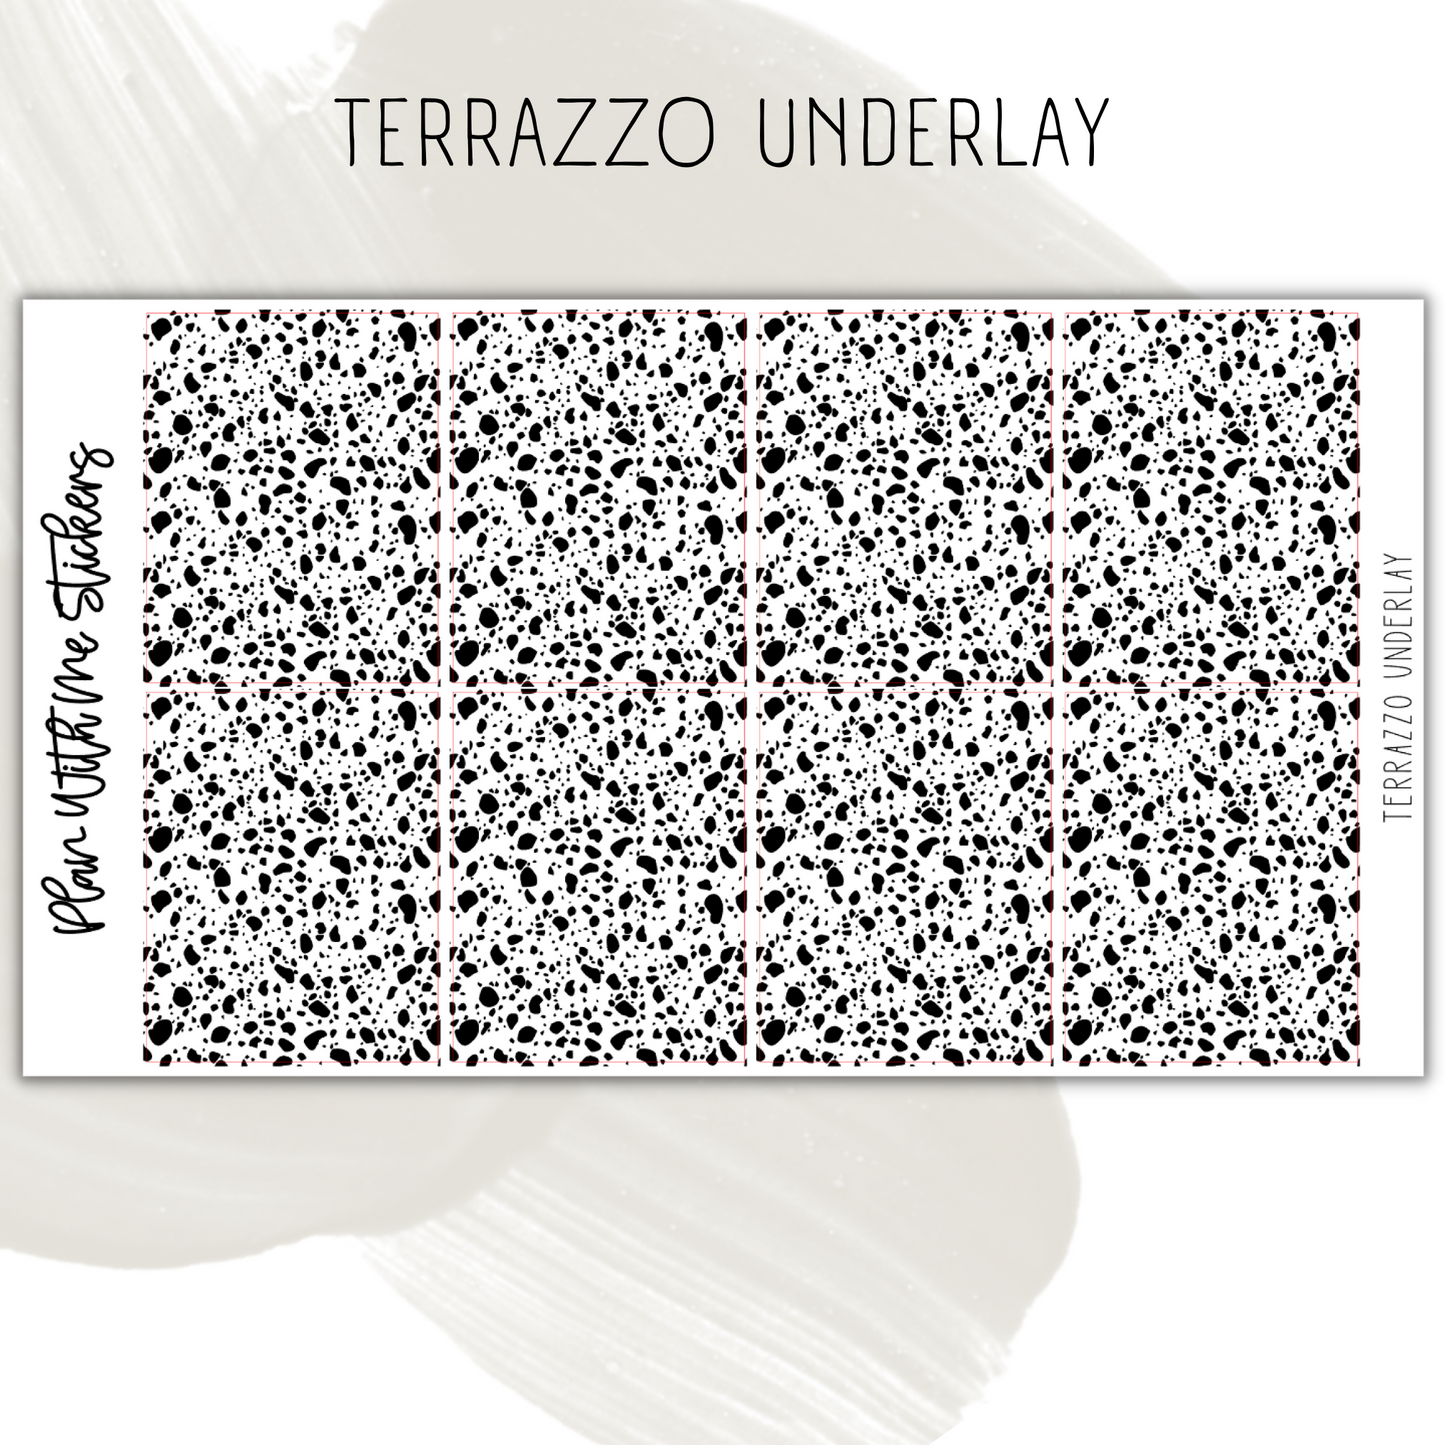 Terrazzo Underlay